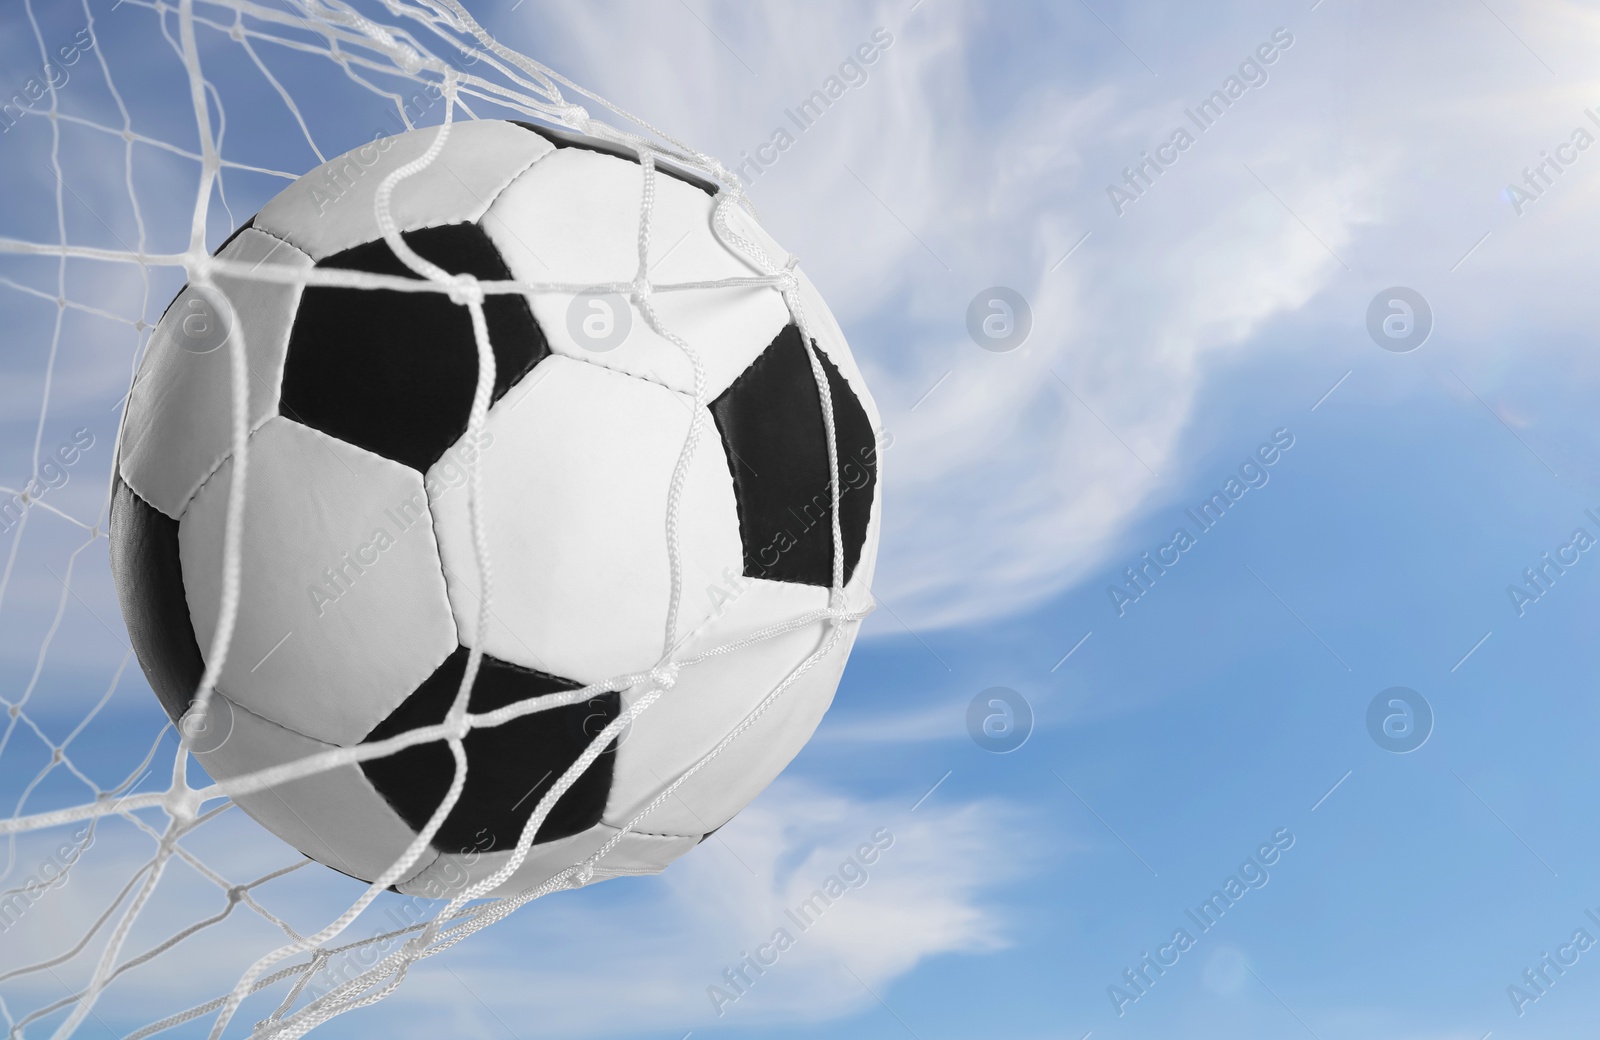 Image of Soccer ball in net against blue sky